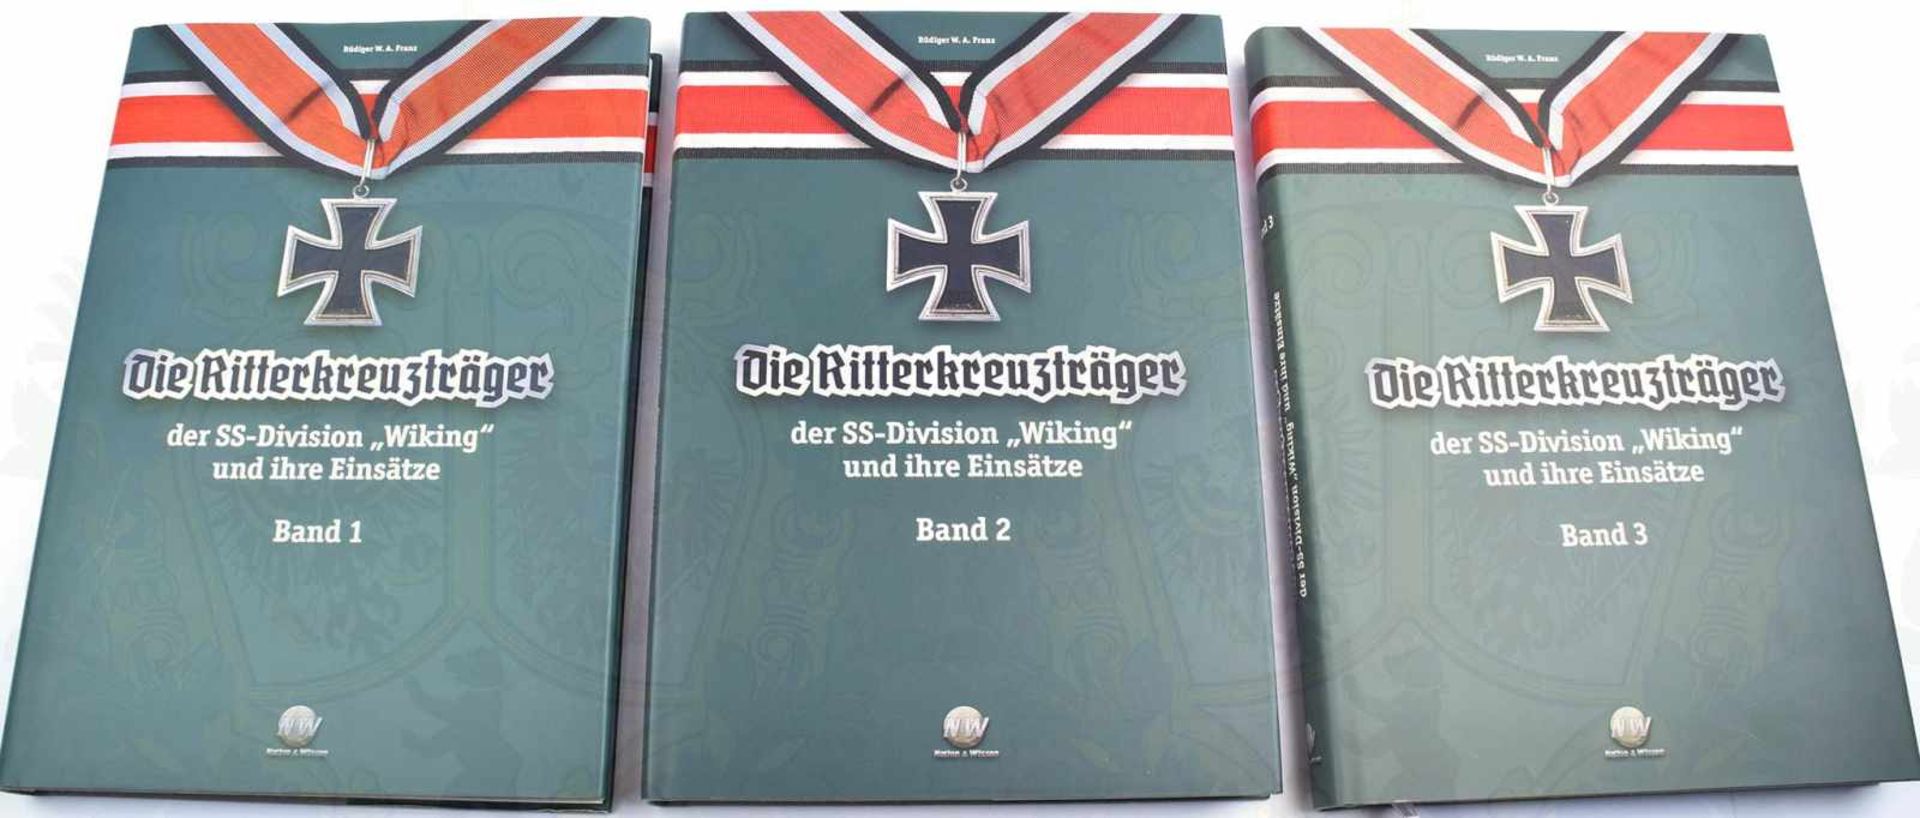 DIE RITTERKREUZTRÄGER DER SS-DIVISION WIKING, „und ihre Einsätze“, Bände 1-3, R. W. Franz, Riesa